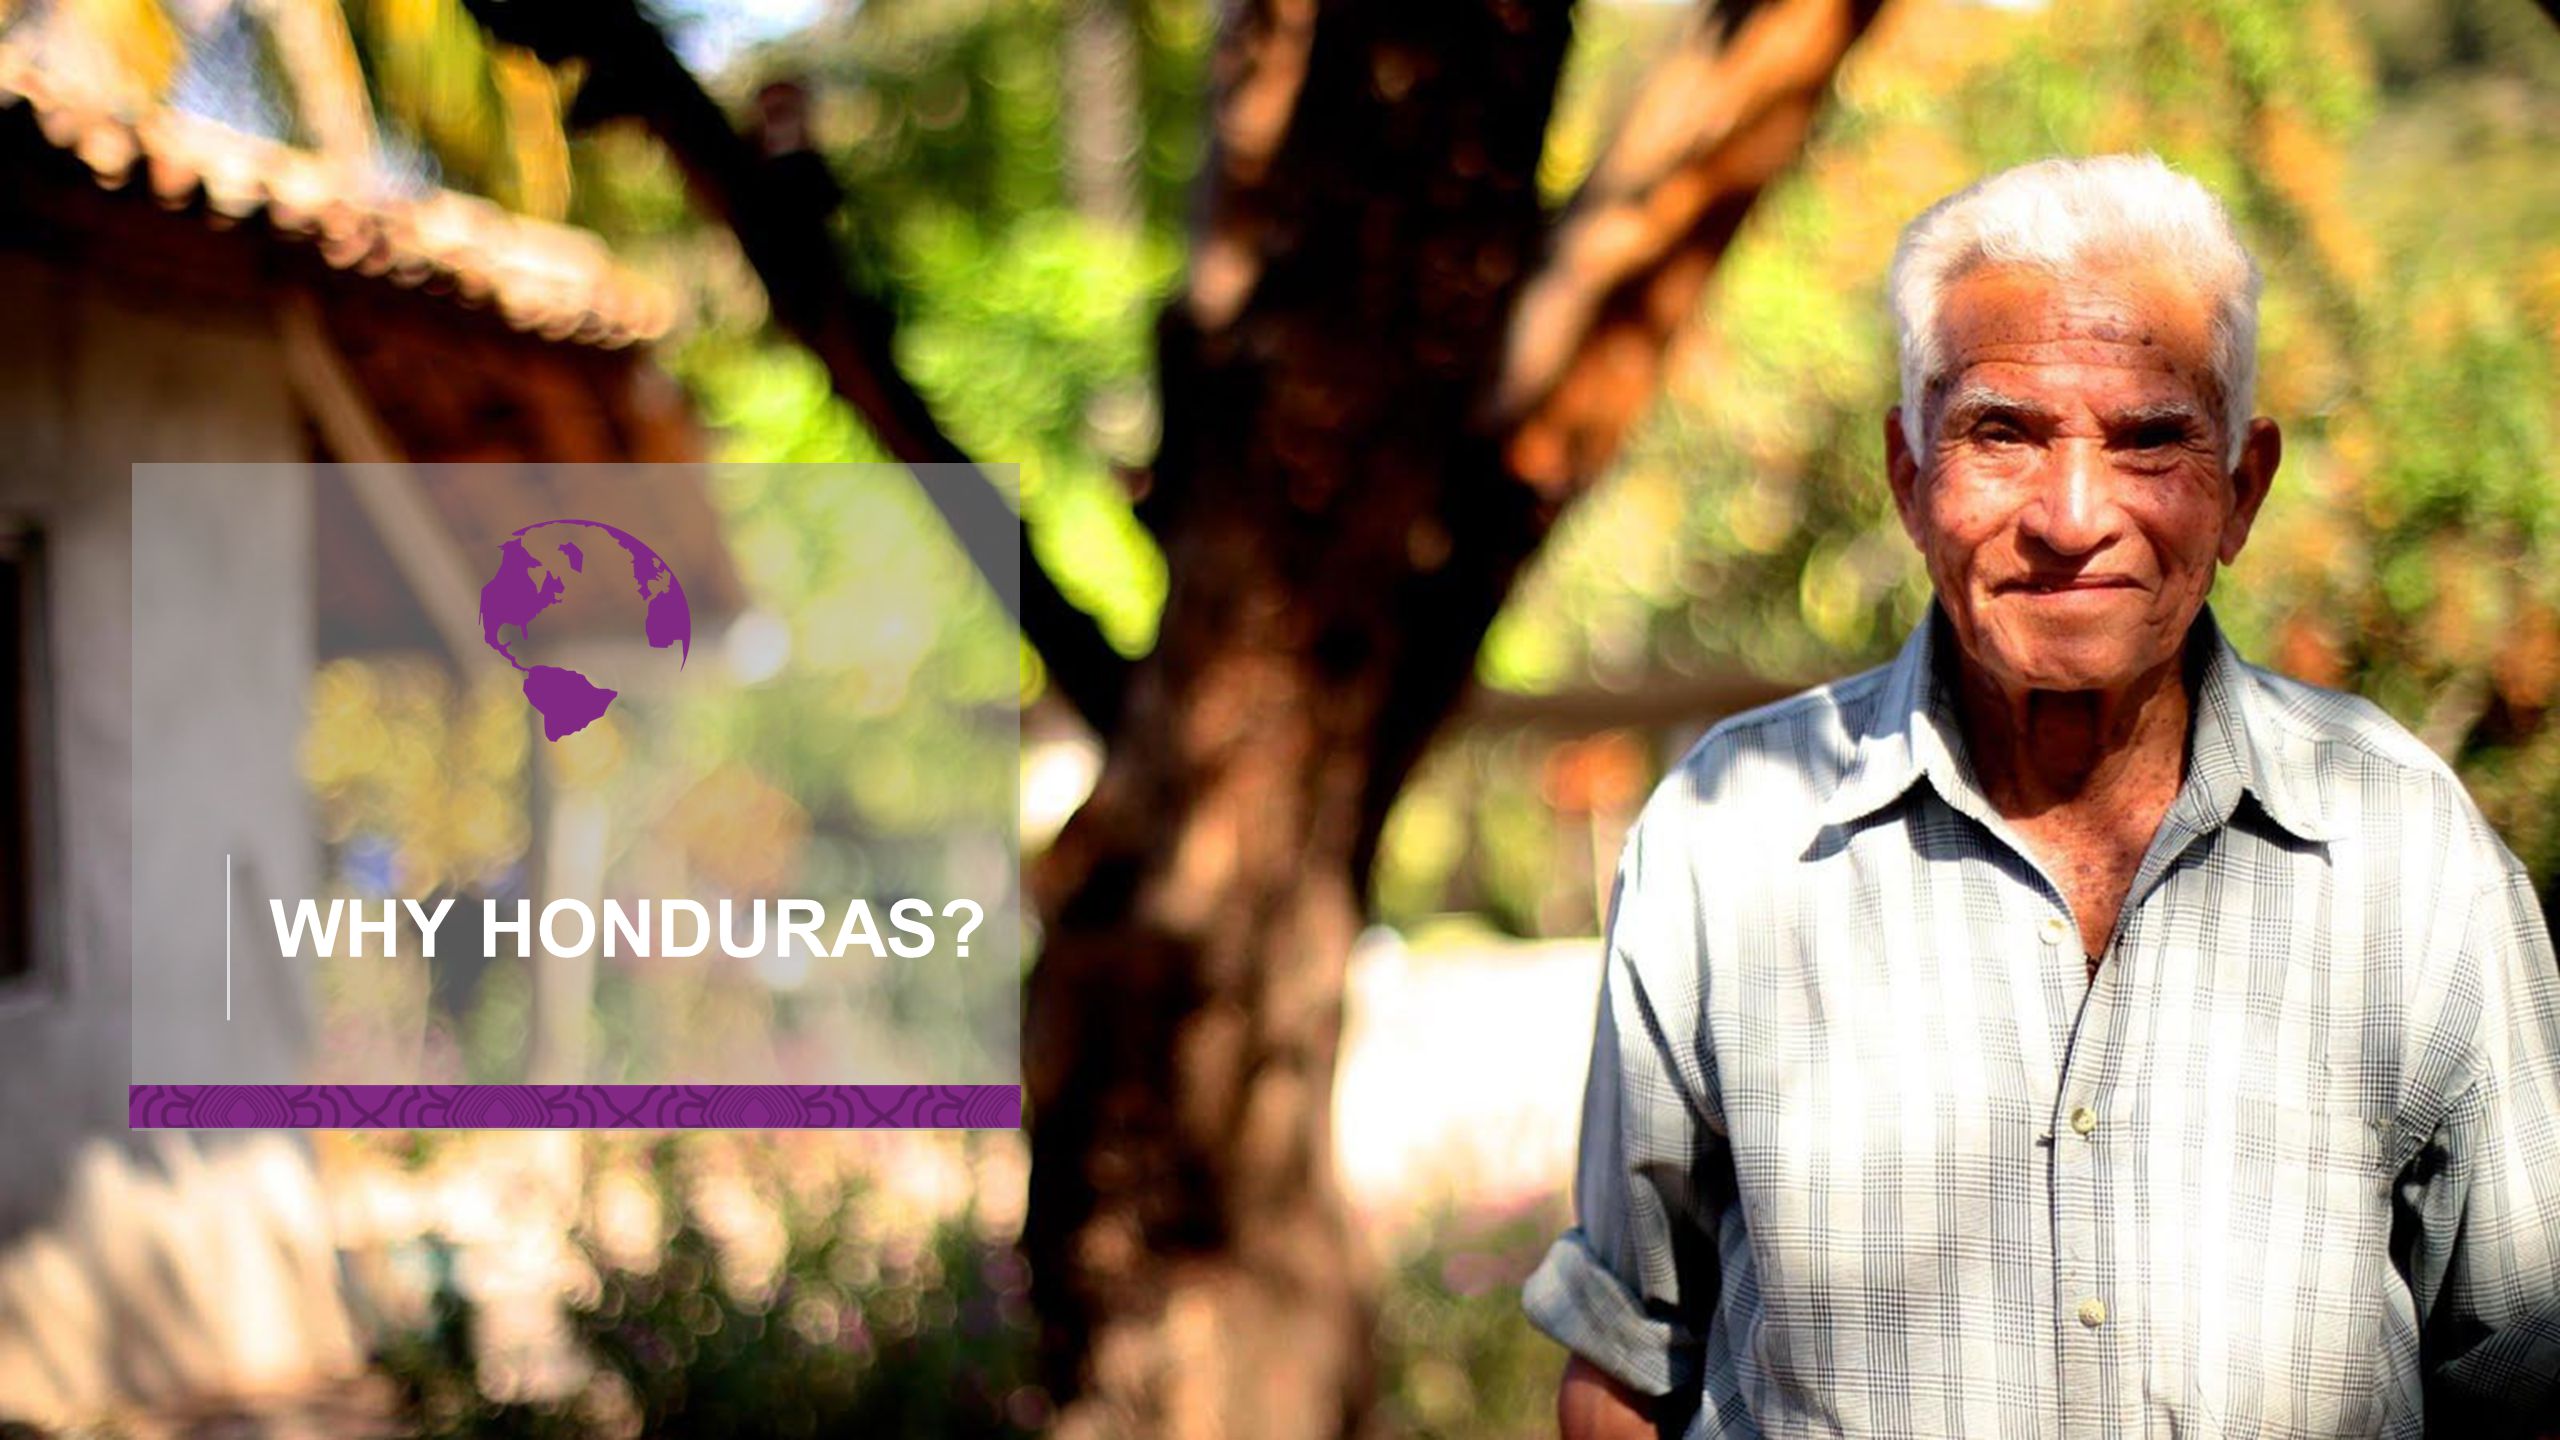 WHY HONDURAS